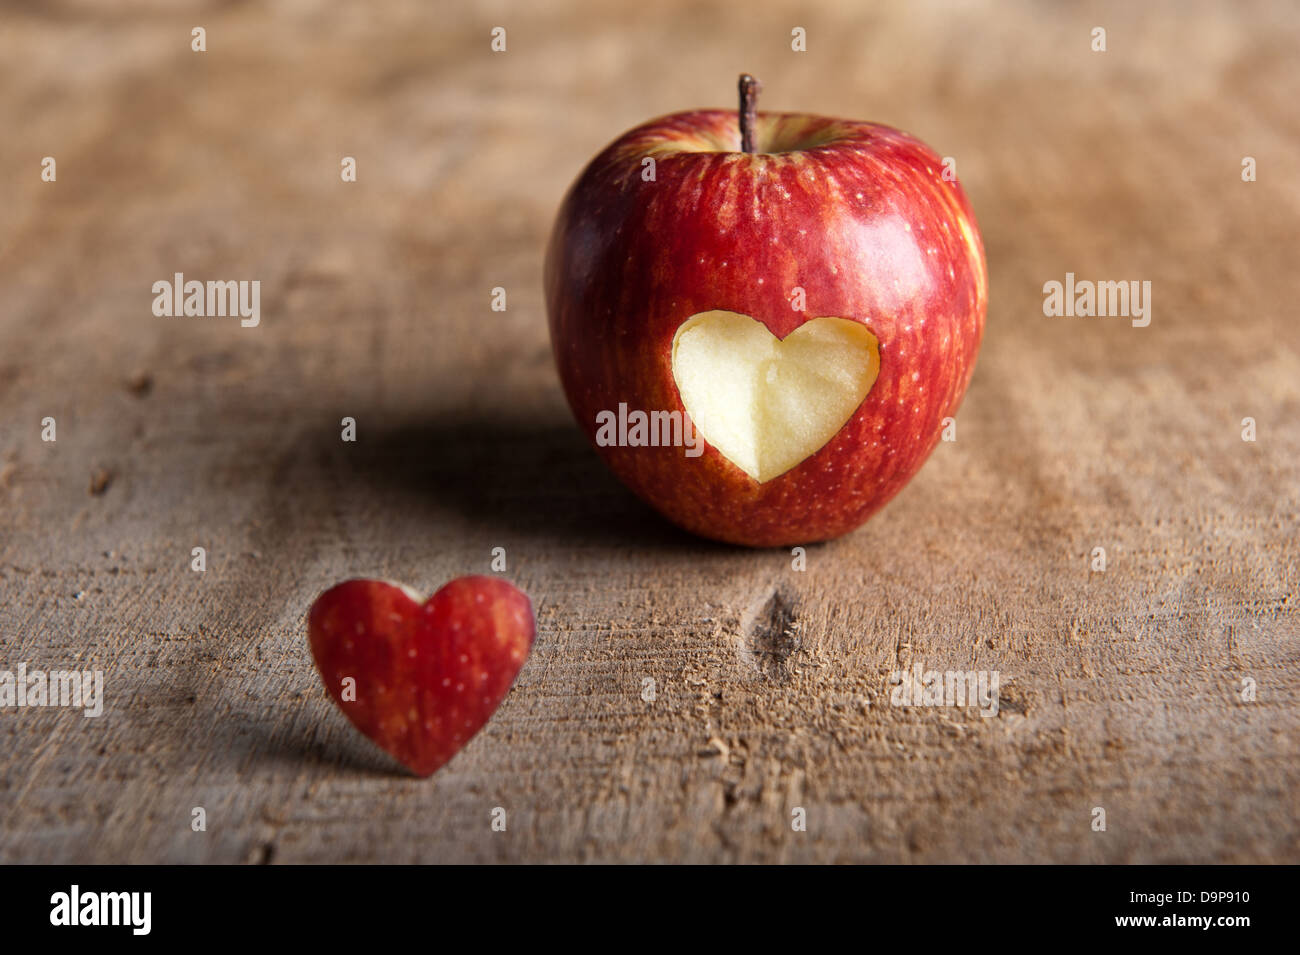 Roter Apfel mit Herz-Form ausschneiden. Die ausgeschnittenen Herzen  vor/neben der Apfel eine Warm getönten Holzoberfläche im Vordergrund. Liebe  Stockfotografie - Alamy